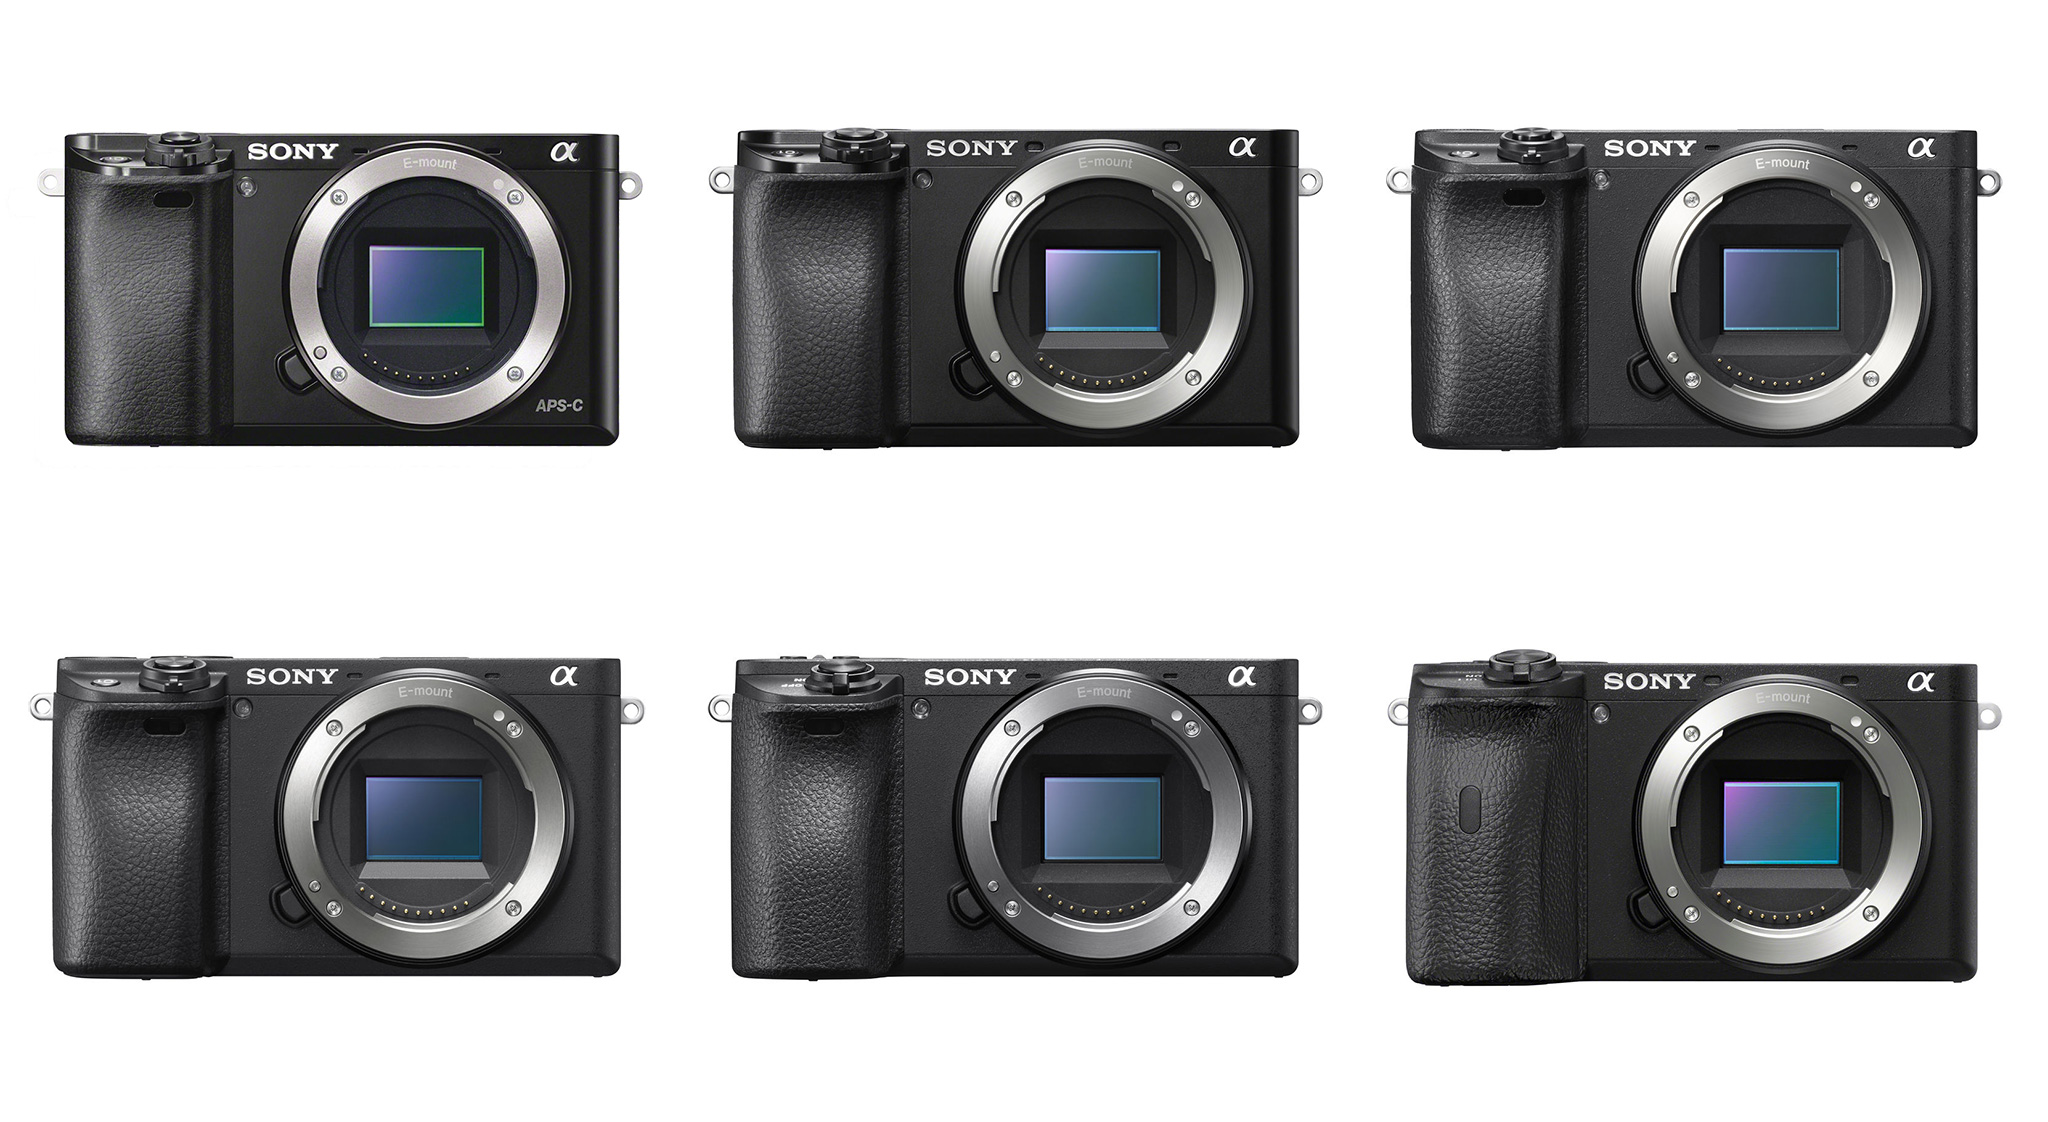 カメラ デジタルカメラ Sony A6x00 Series Comparison (A6000, A6100, A6300, A6400, A6500 